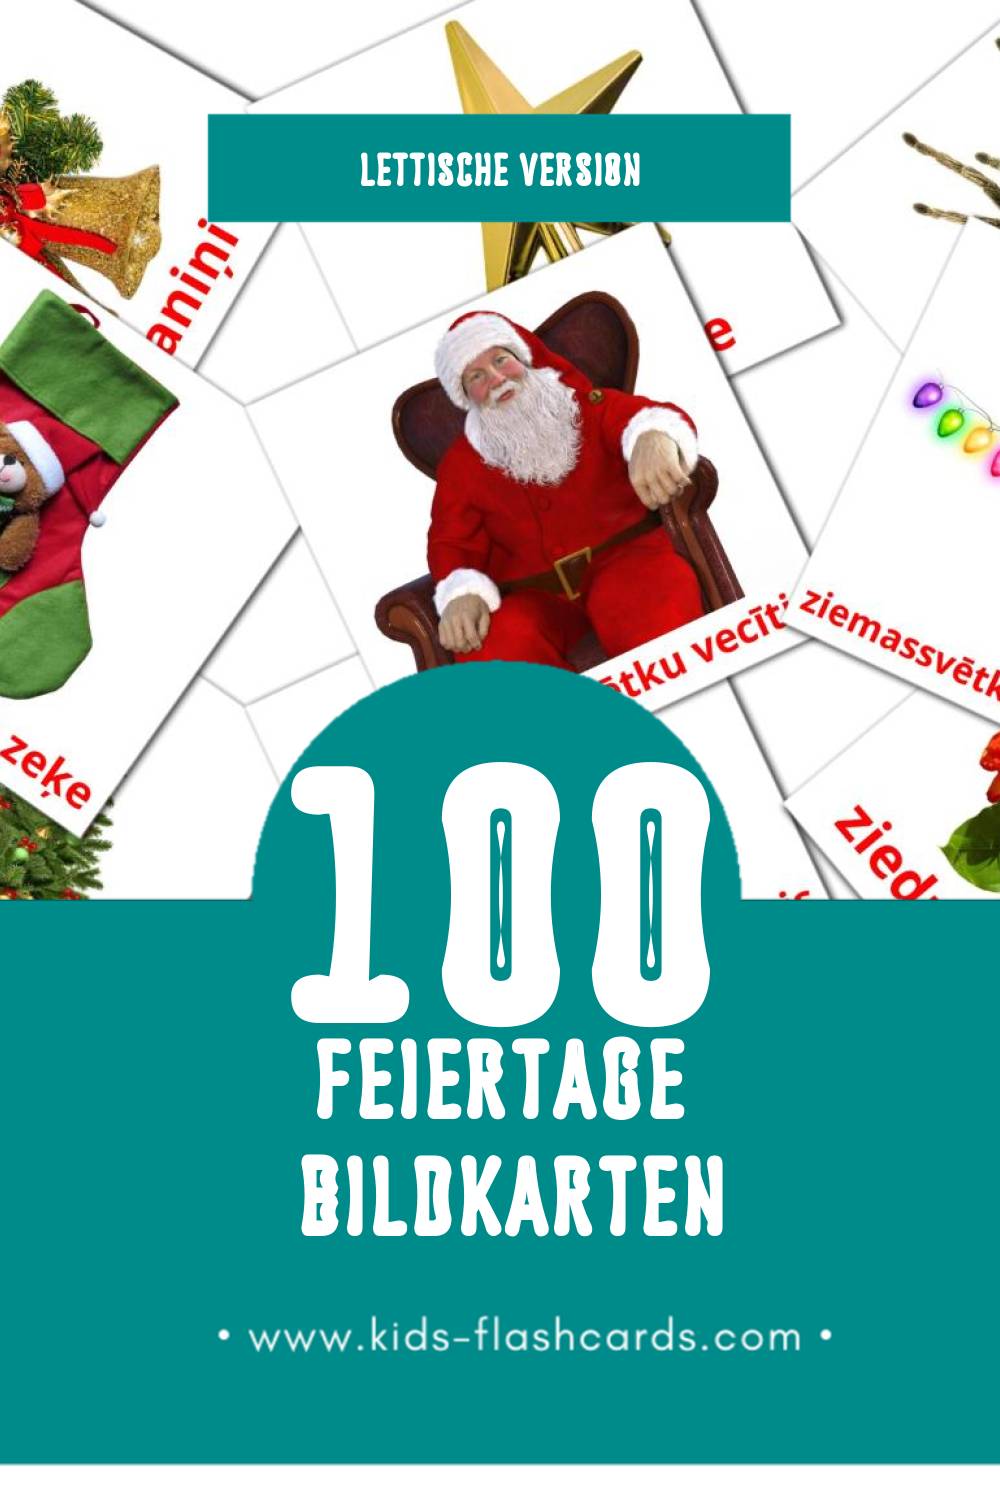 Visual Brīvdienas Flashcards für Kleinkinder (75 Karten in Lettisch)